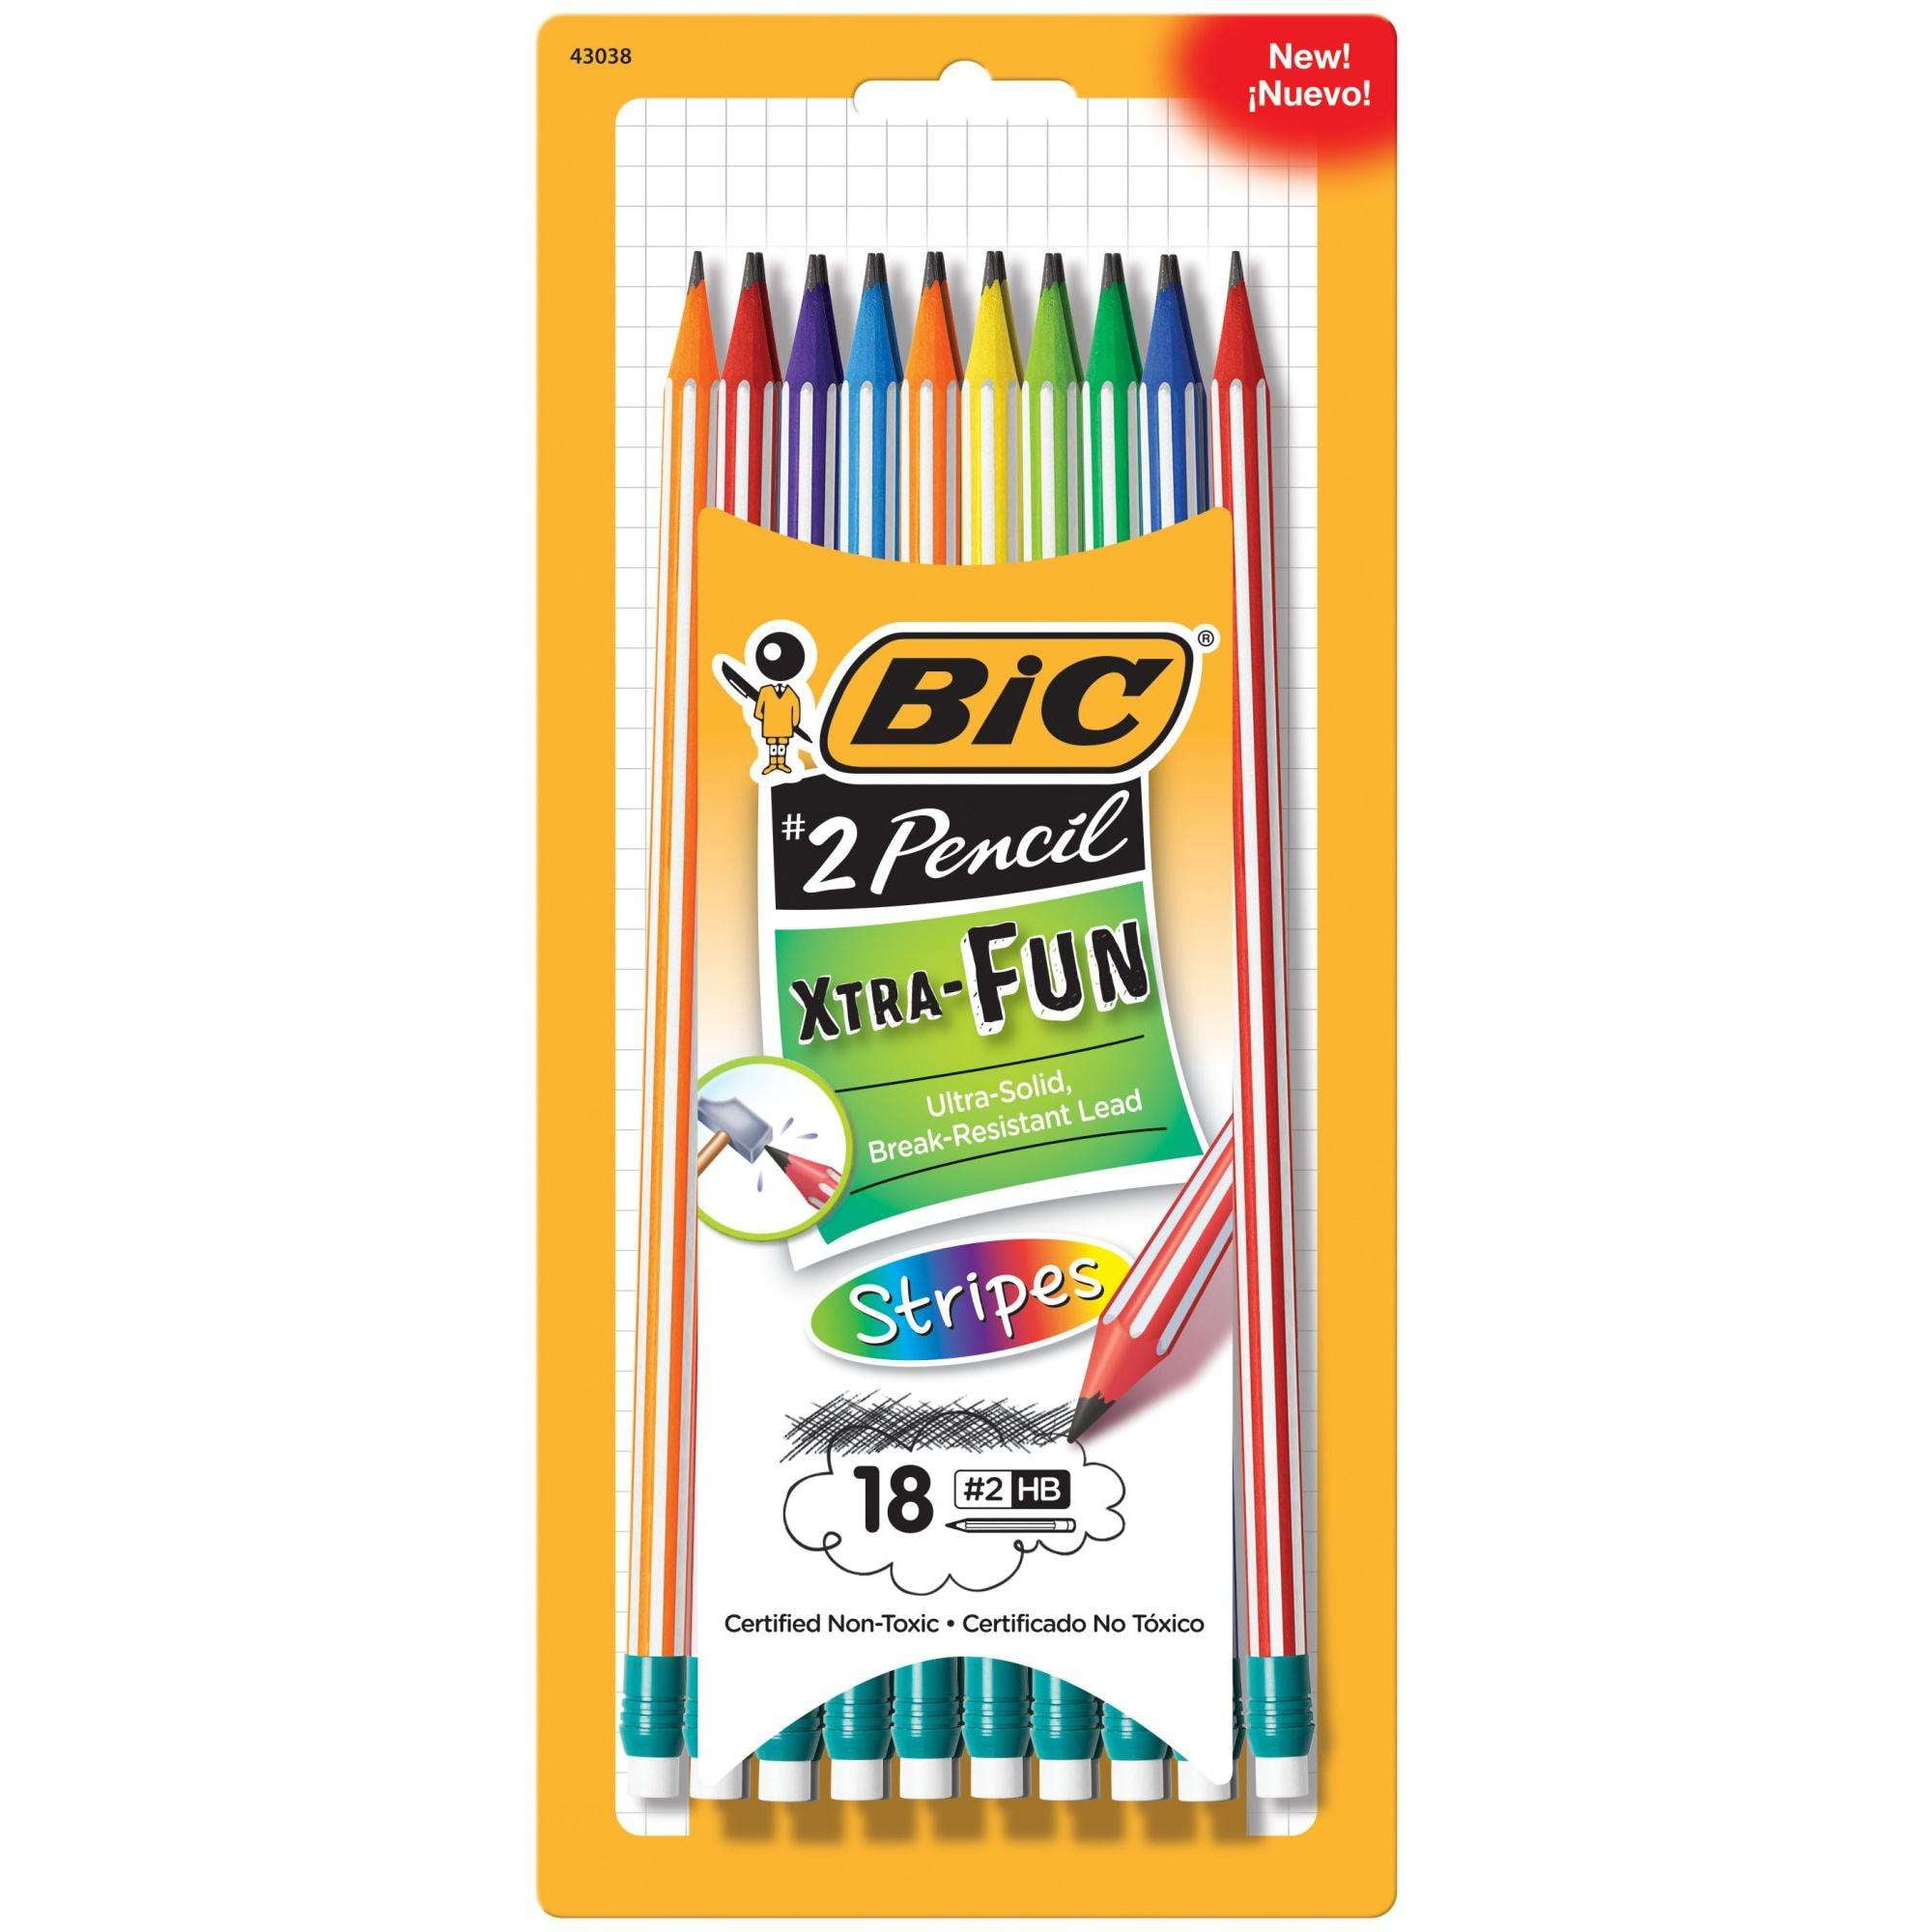 Black Lead Hb #2 Bic #2 Pencil Xtra Fun Assorted Barrel Colors 8/Pack 70330428539 